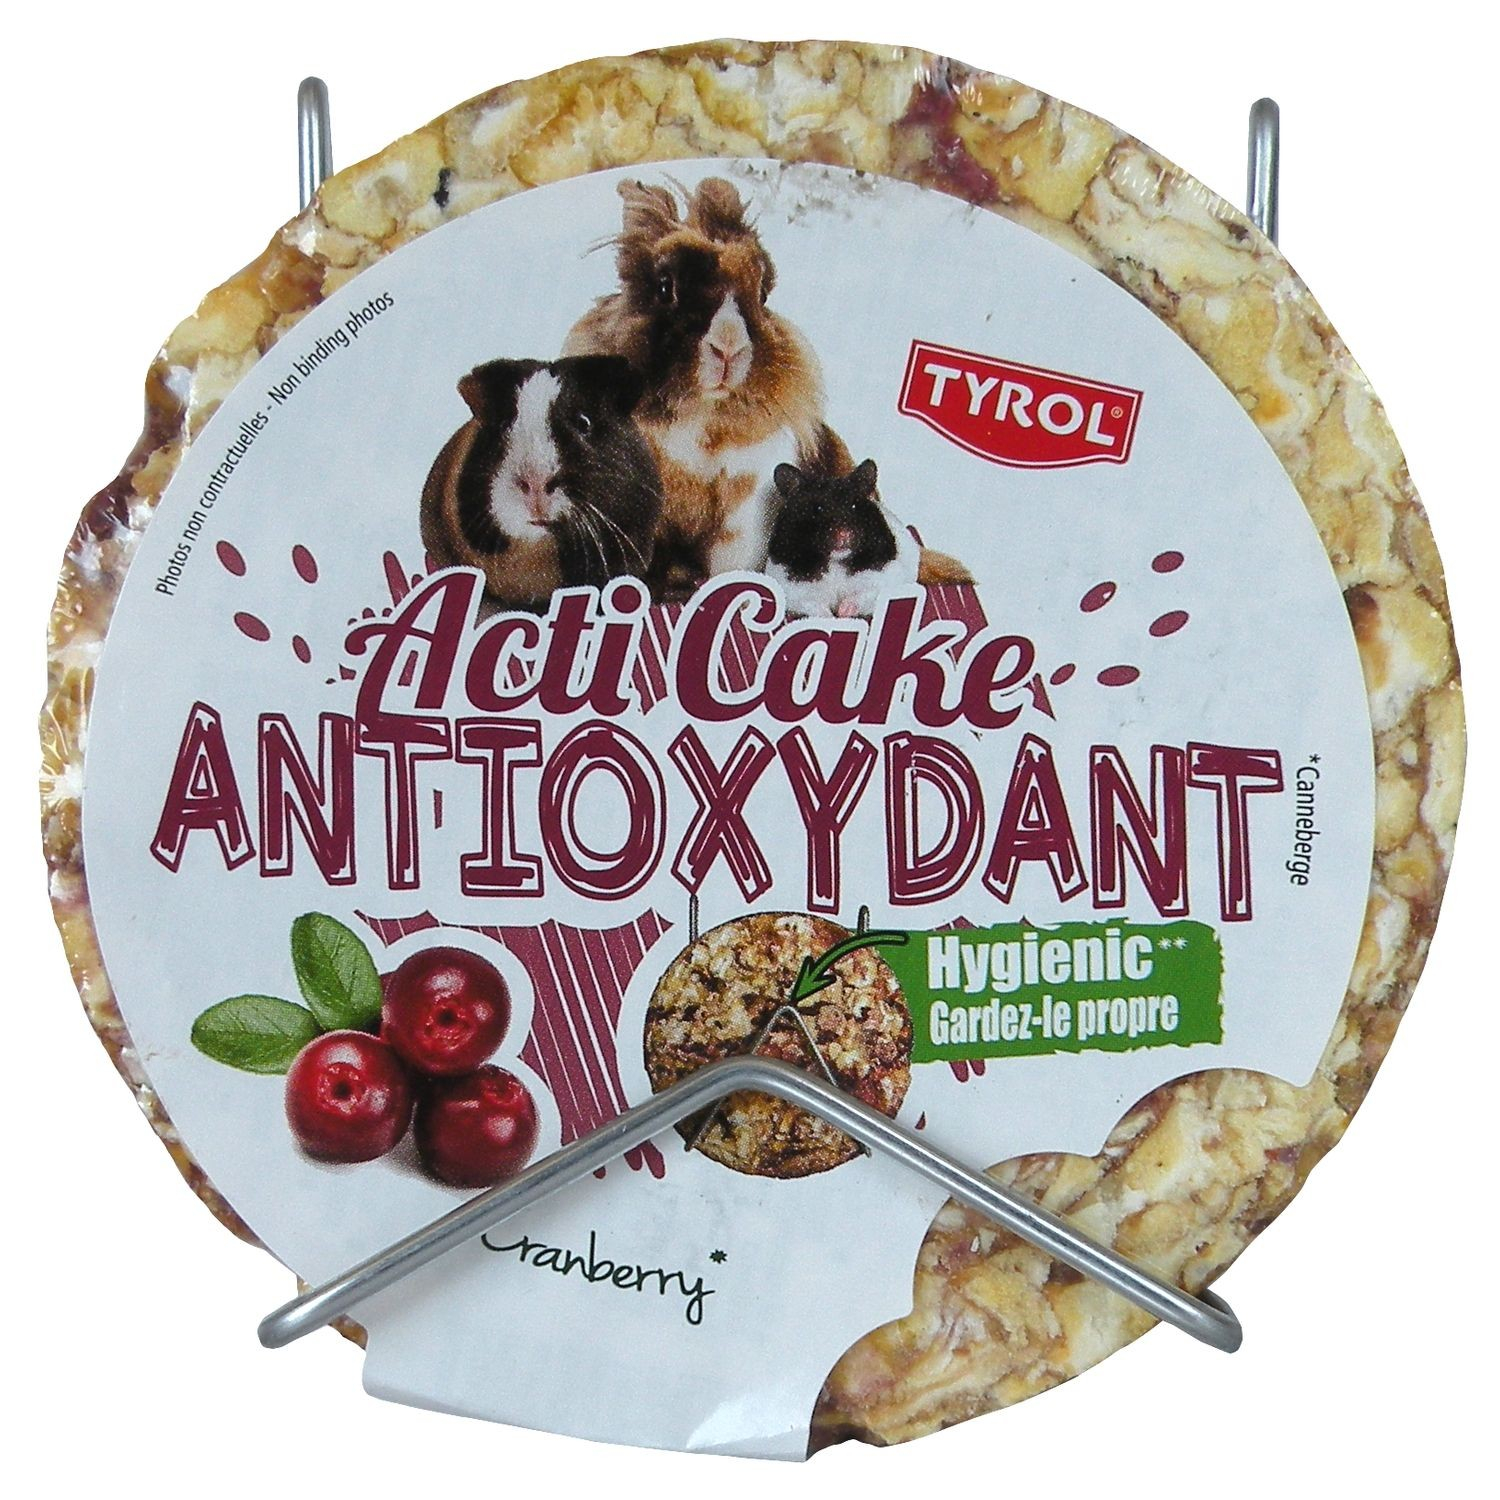 Tyrol snack dischetto compresso mais roffiato e cranberry, acti'cake antiossidante per conigli e roditori. snack sano e goloso. 100g 100G - 3,3x9,5x10,3